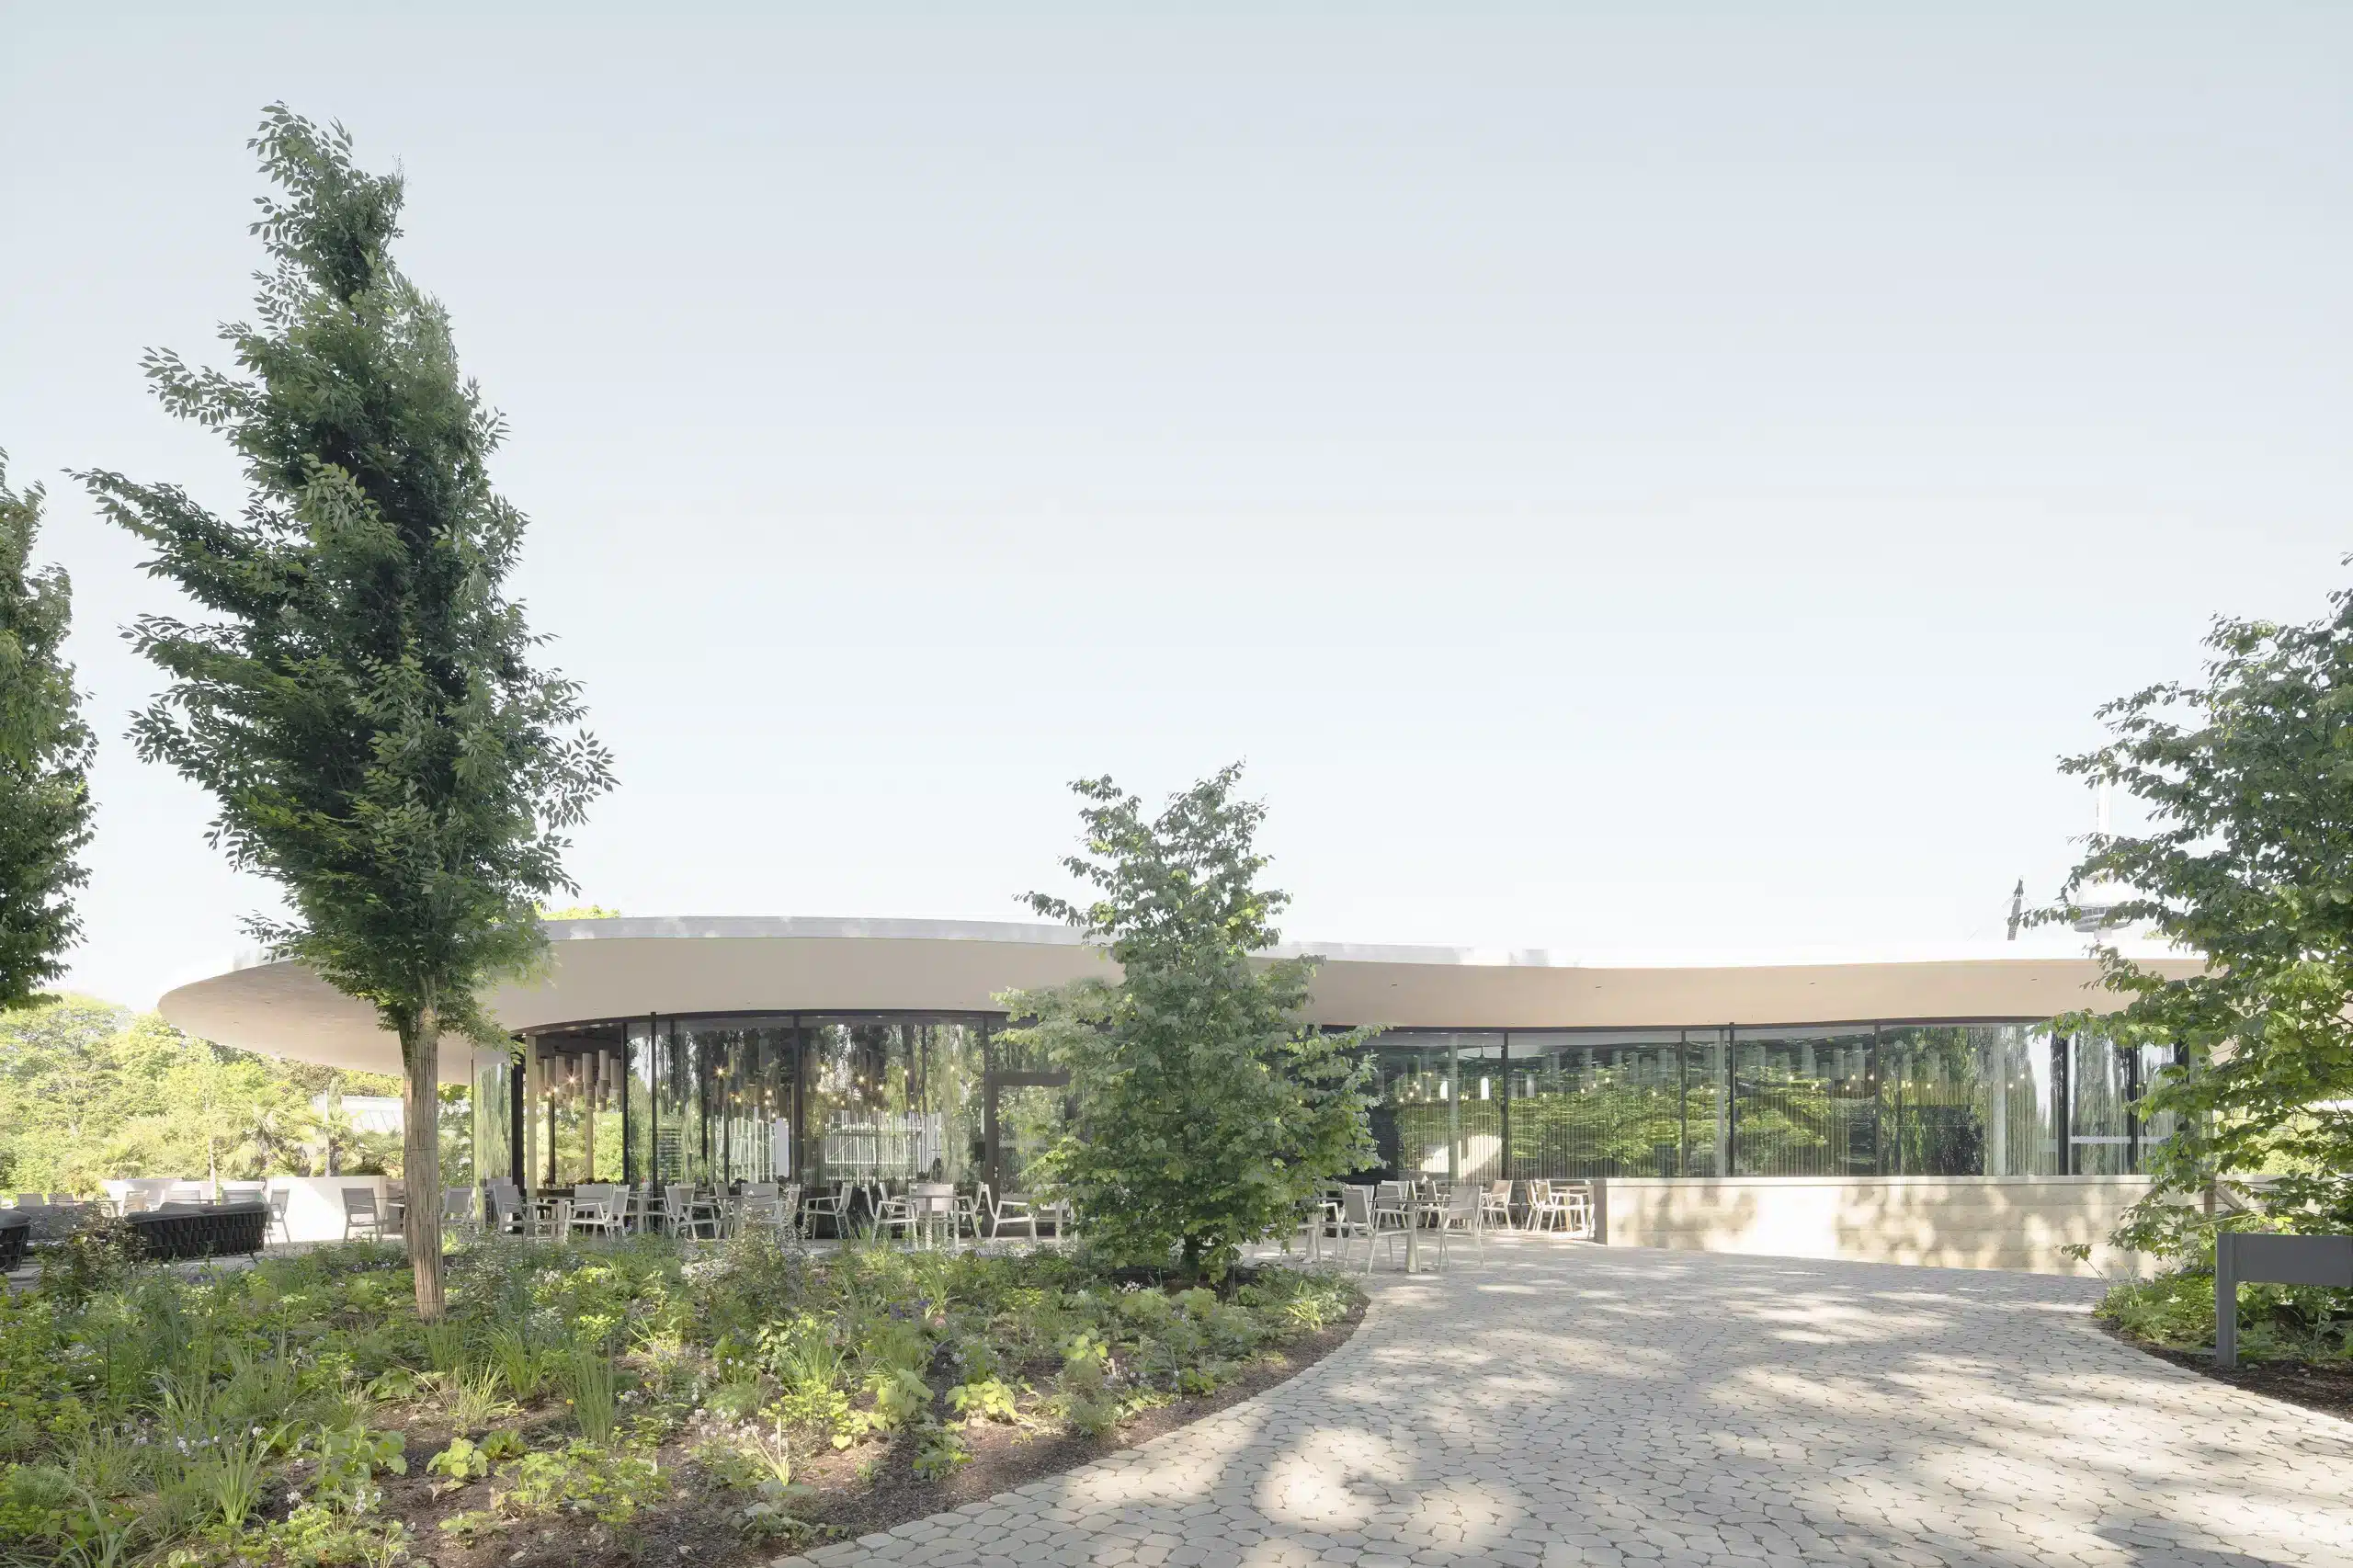 Das Grüne Erlebniszentrum von BEZ + Kock Architekten im Luisenpark Mannheim zeichnet sich durch seine fließende Form mit dem Dach als Verbindungselement aus. Bildquelle: © Brigida González